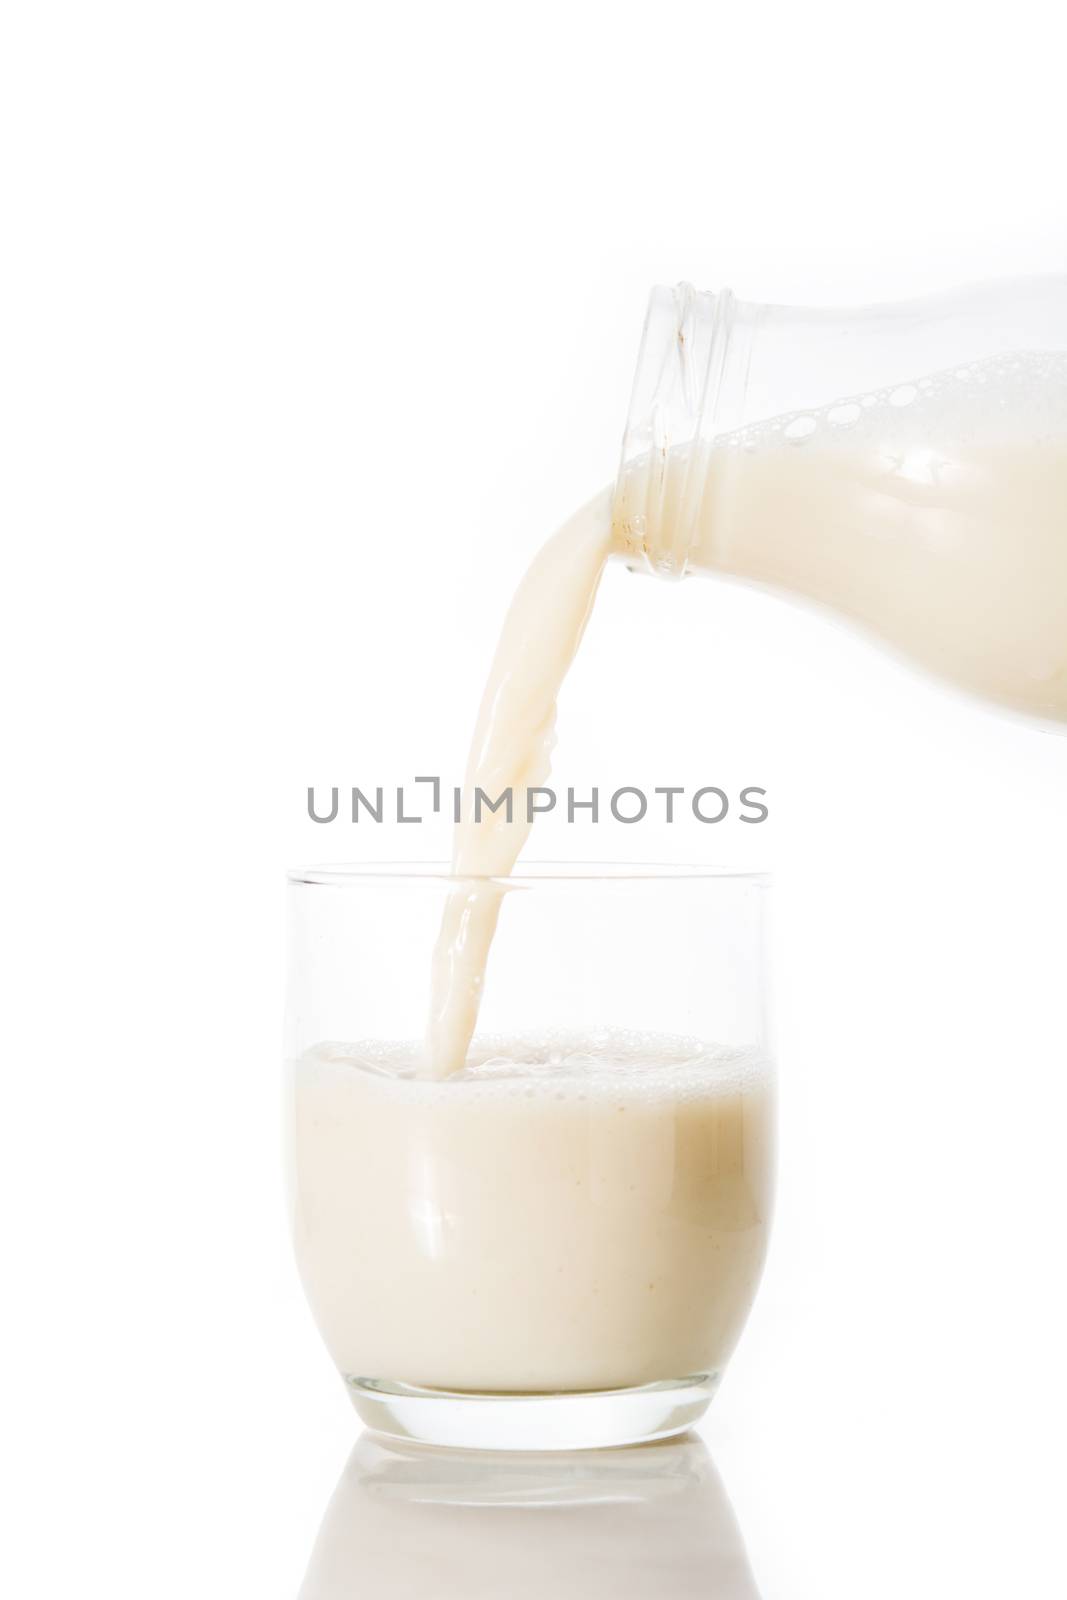 Oats milk in a bottle by chandlervid85